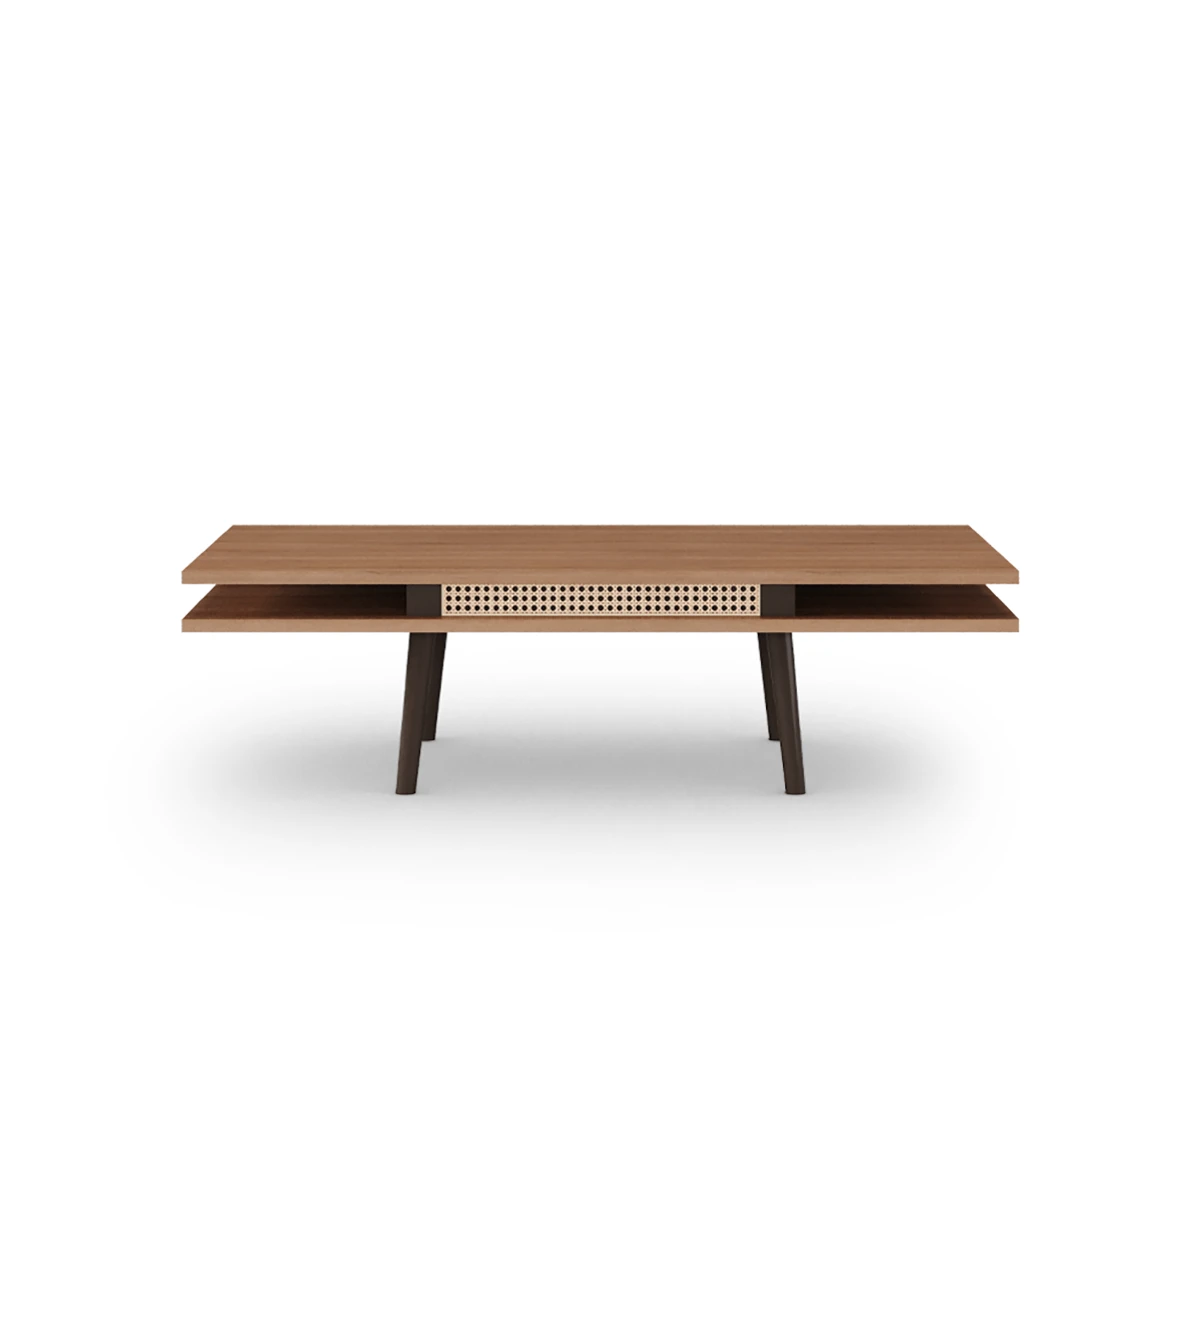 Table basse Malmo rectangulaire, détail en rotin, 2 plateaux en noyer et pieds laqués marron foncé, 120 x 60 cm.